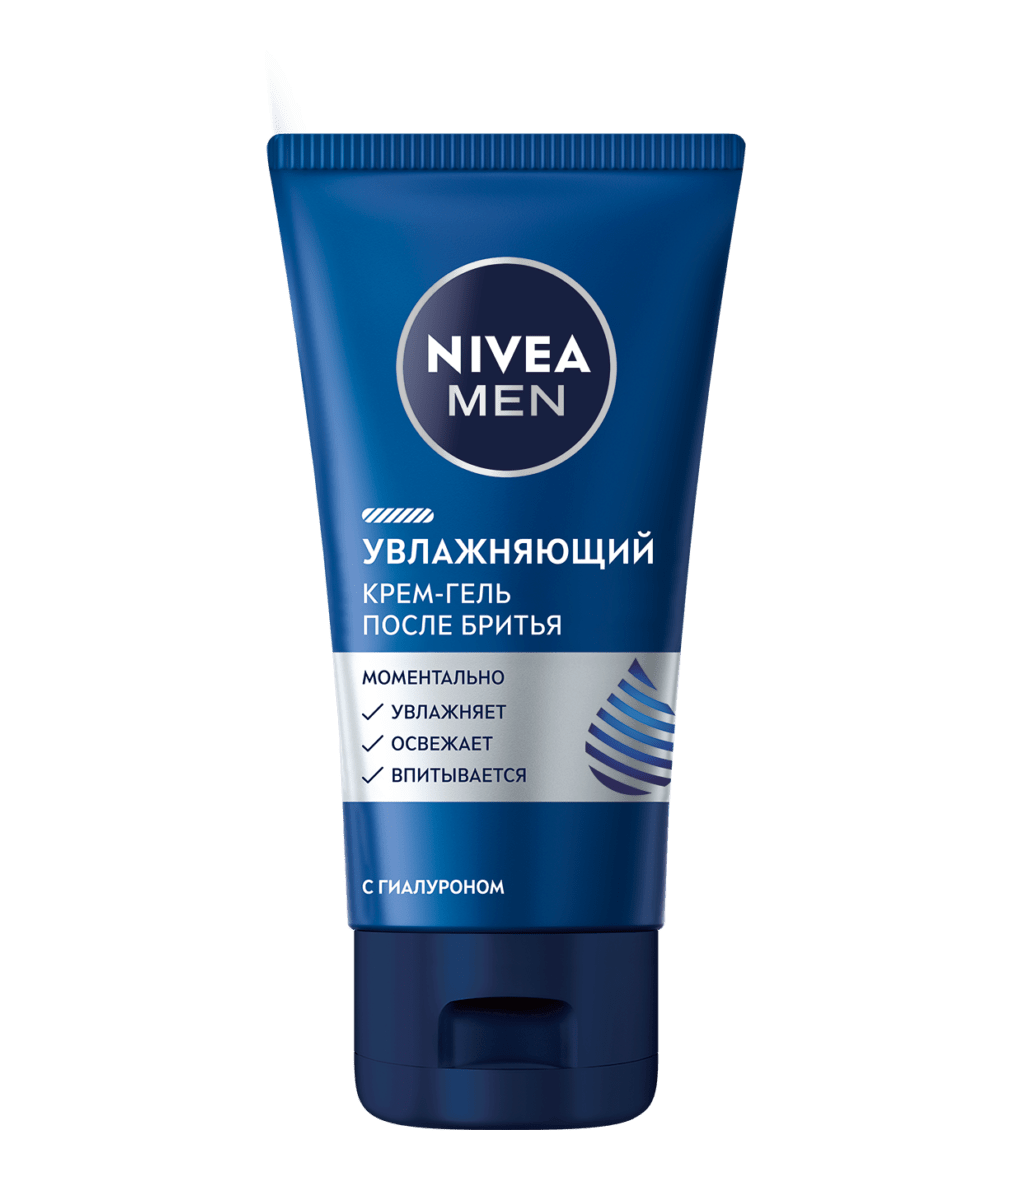 NIVEA MEN увлажняющий крем-гель после бритья, 50 мл